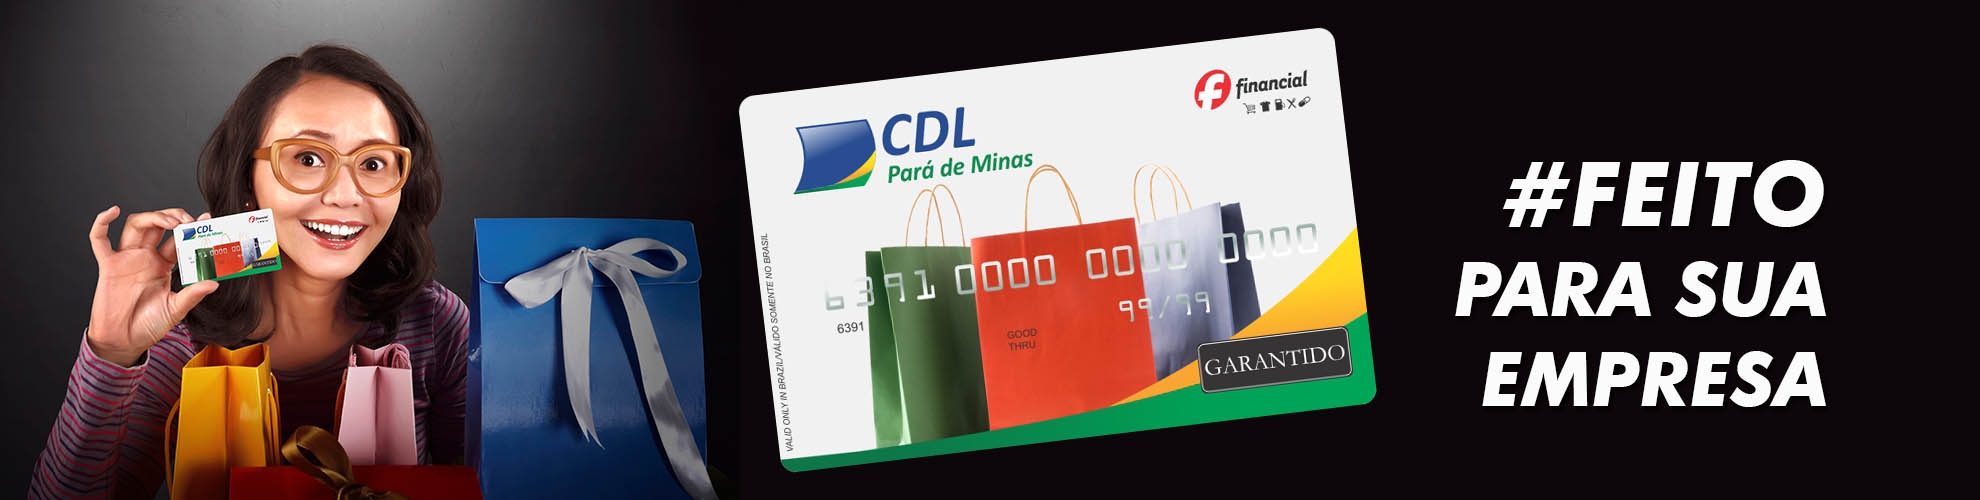 Cartão Convênio CDL Pará de Minas